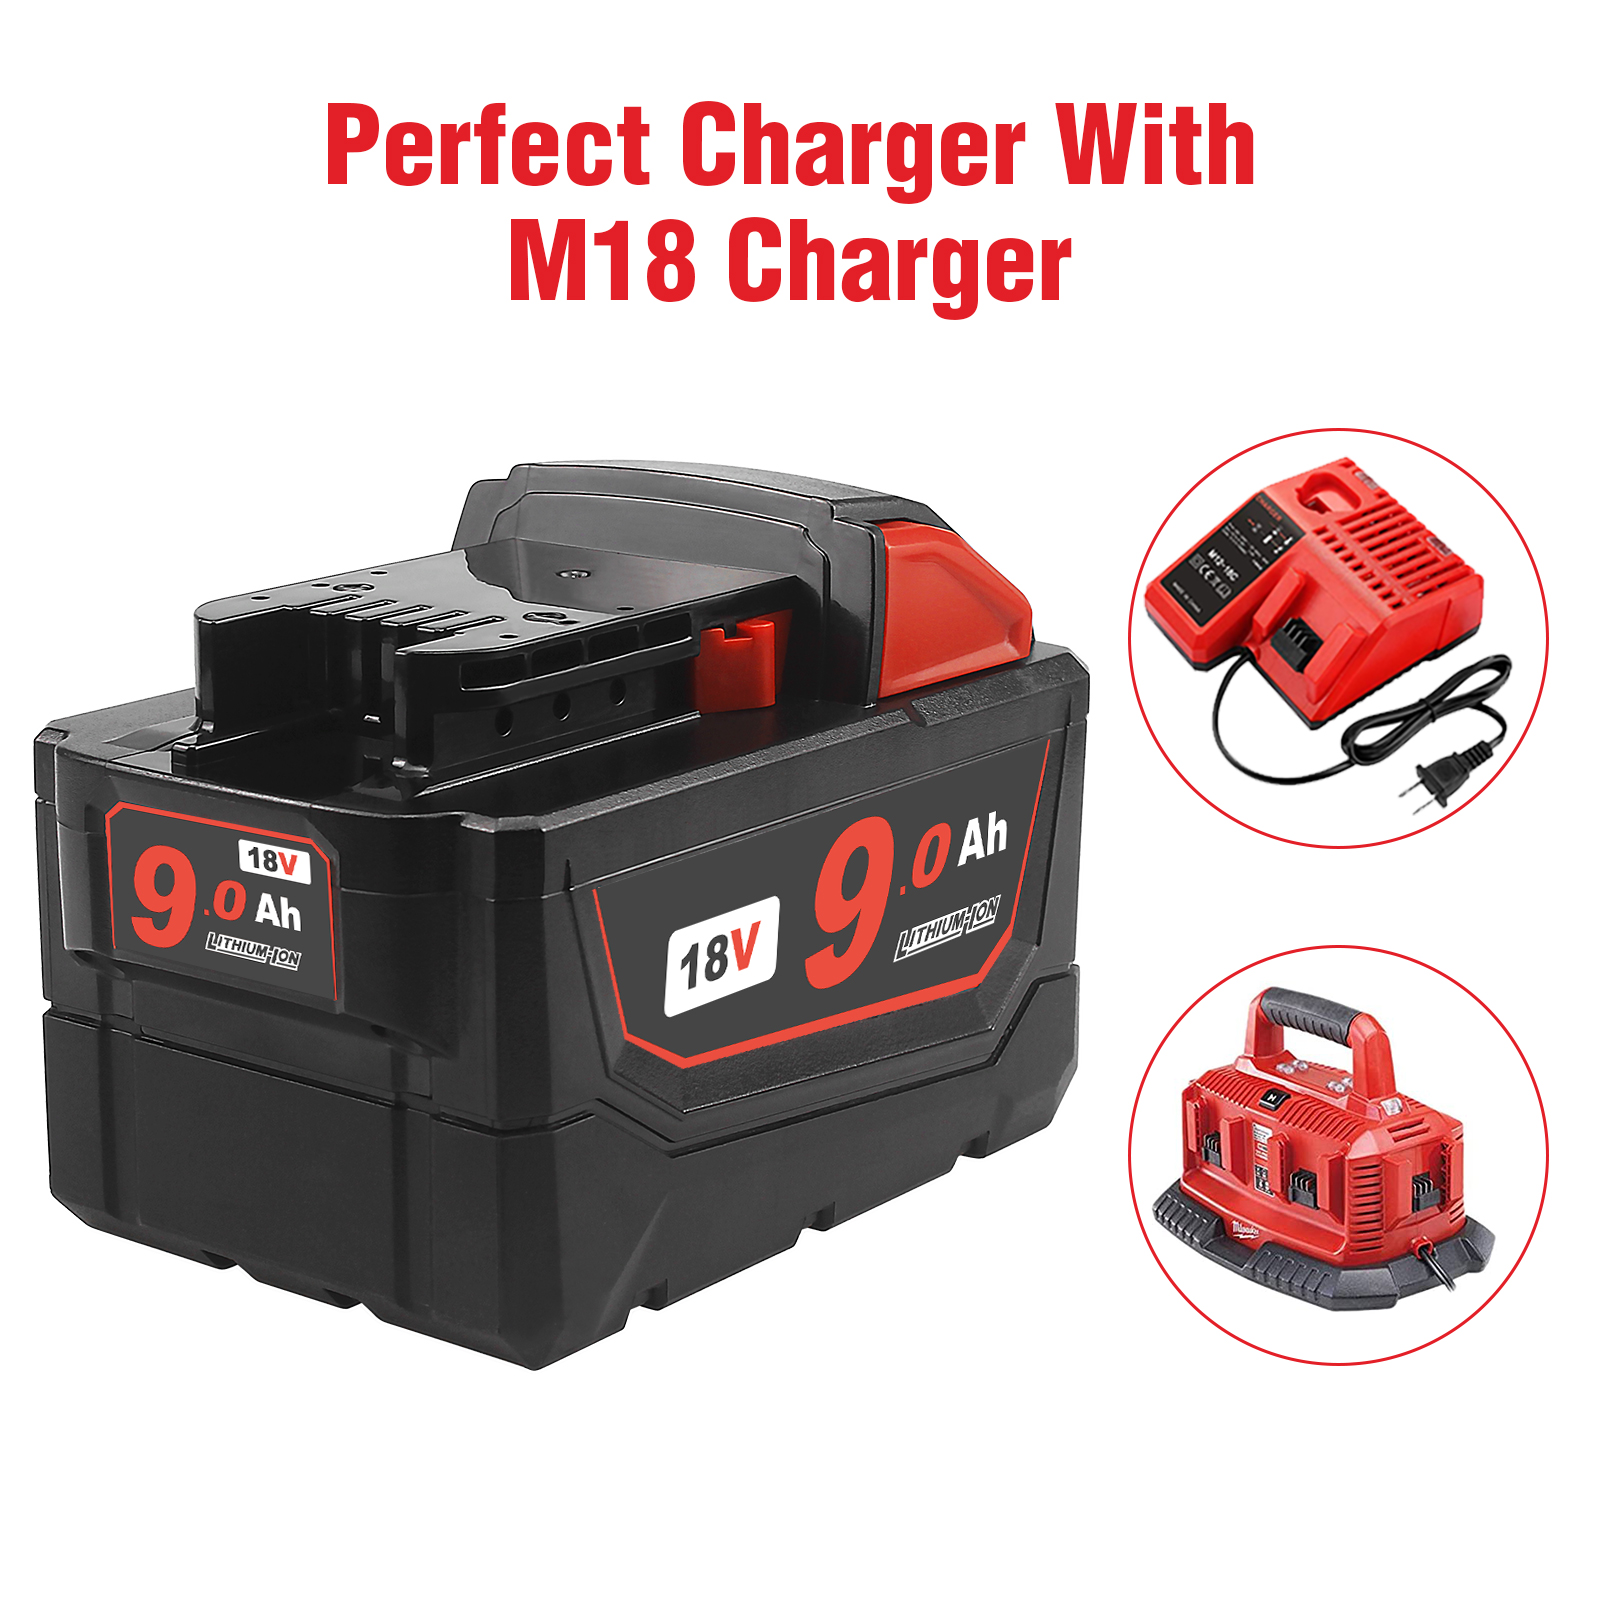 WTL M18 (9.0Ah) Power tool battery